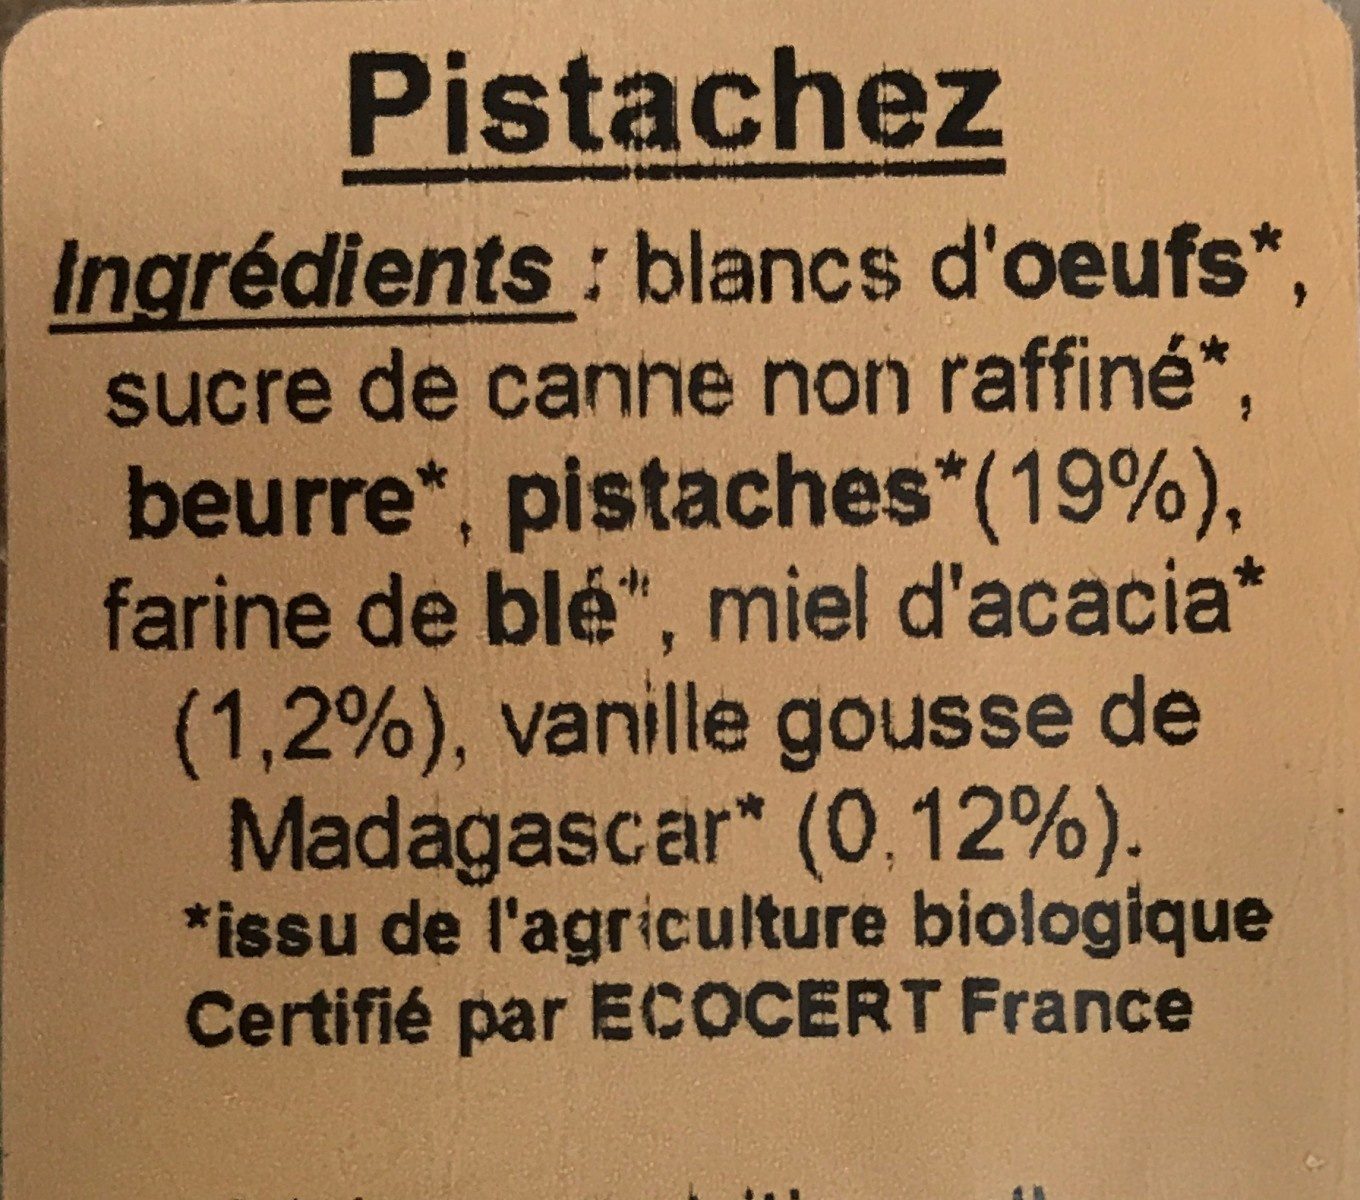 Financier pistache - Ingrédients